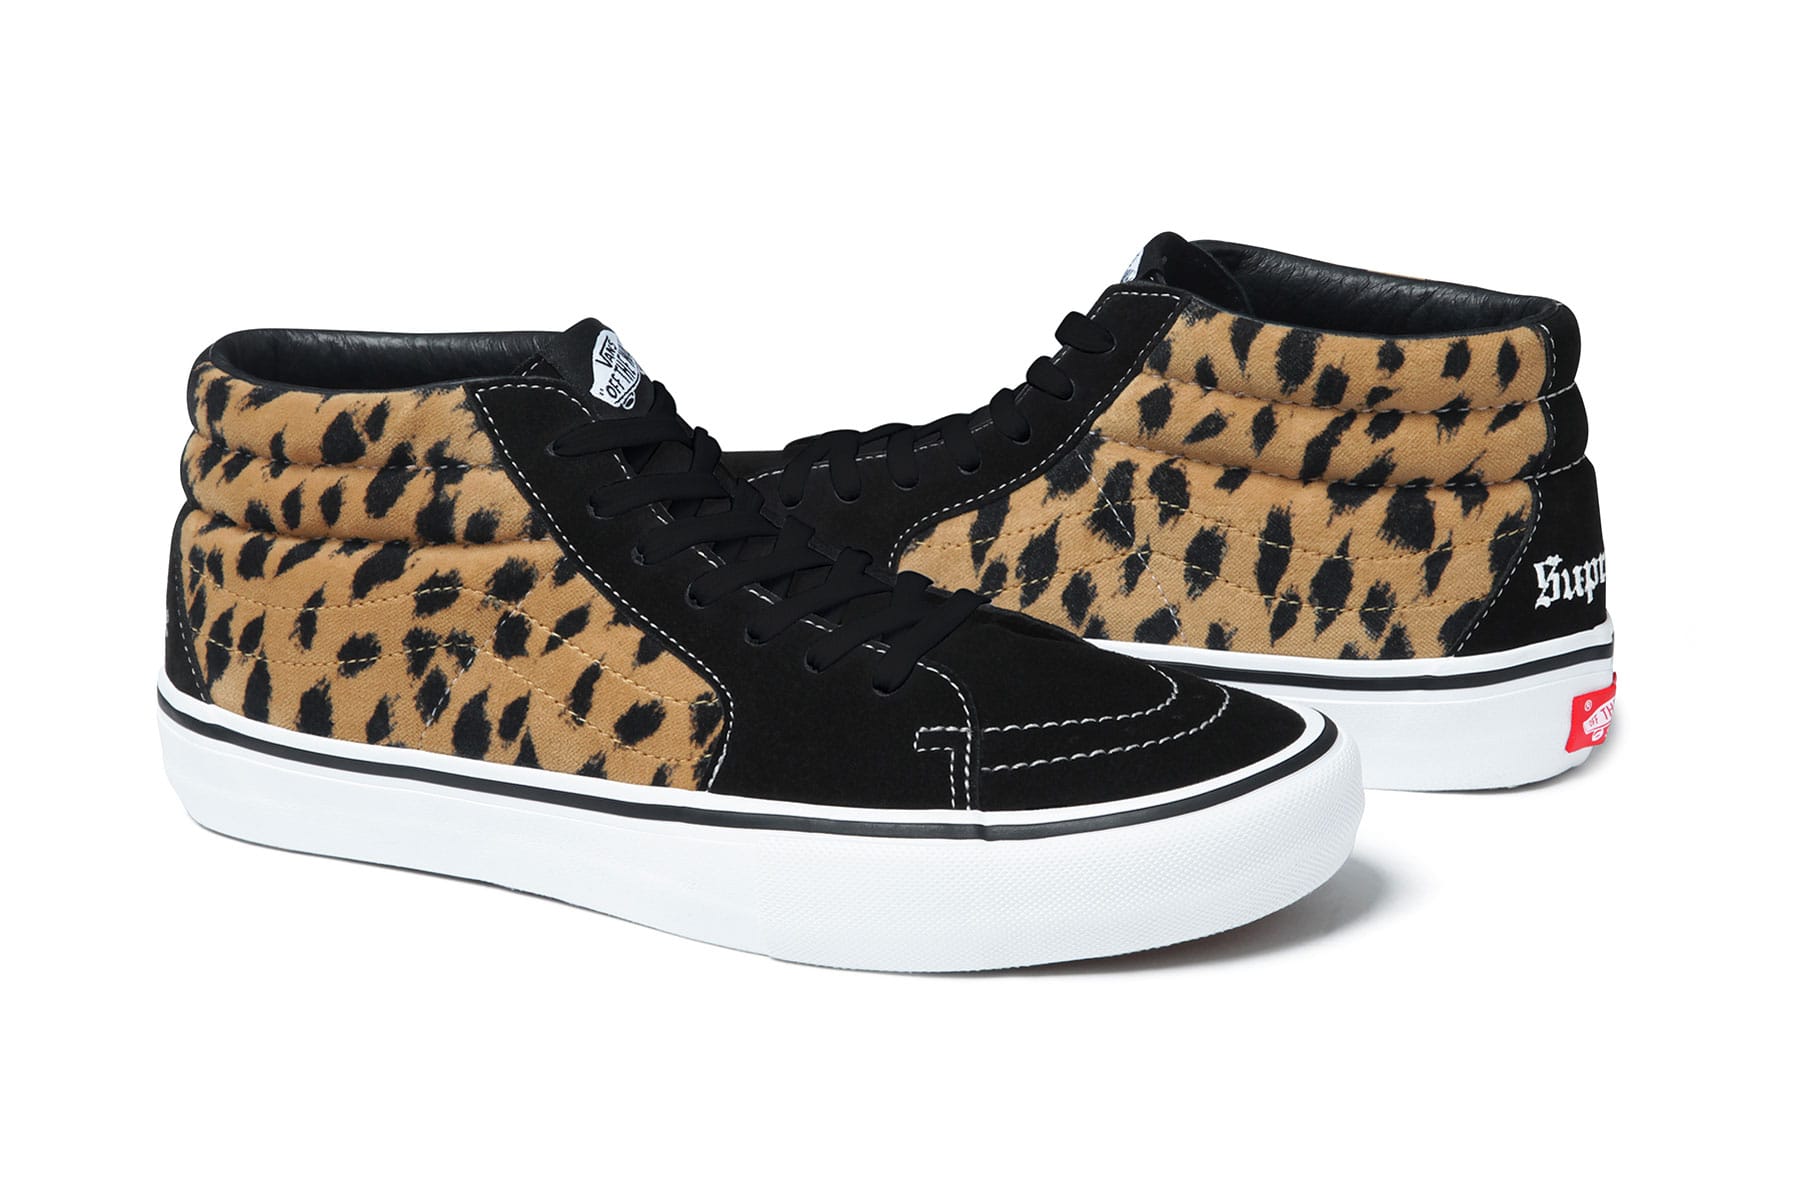 supreme x vans leopard collection